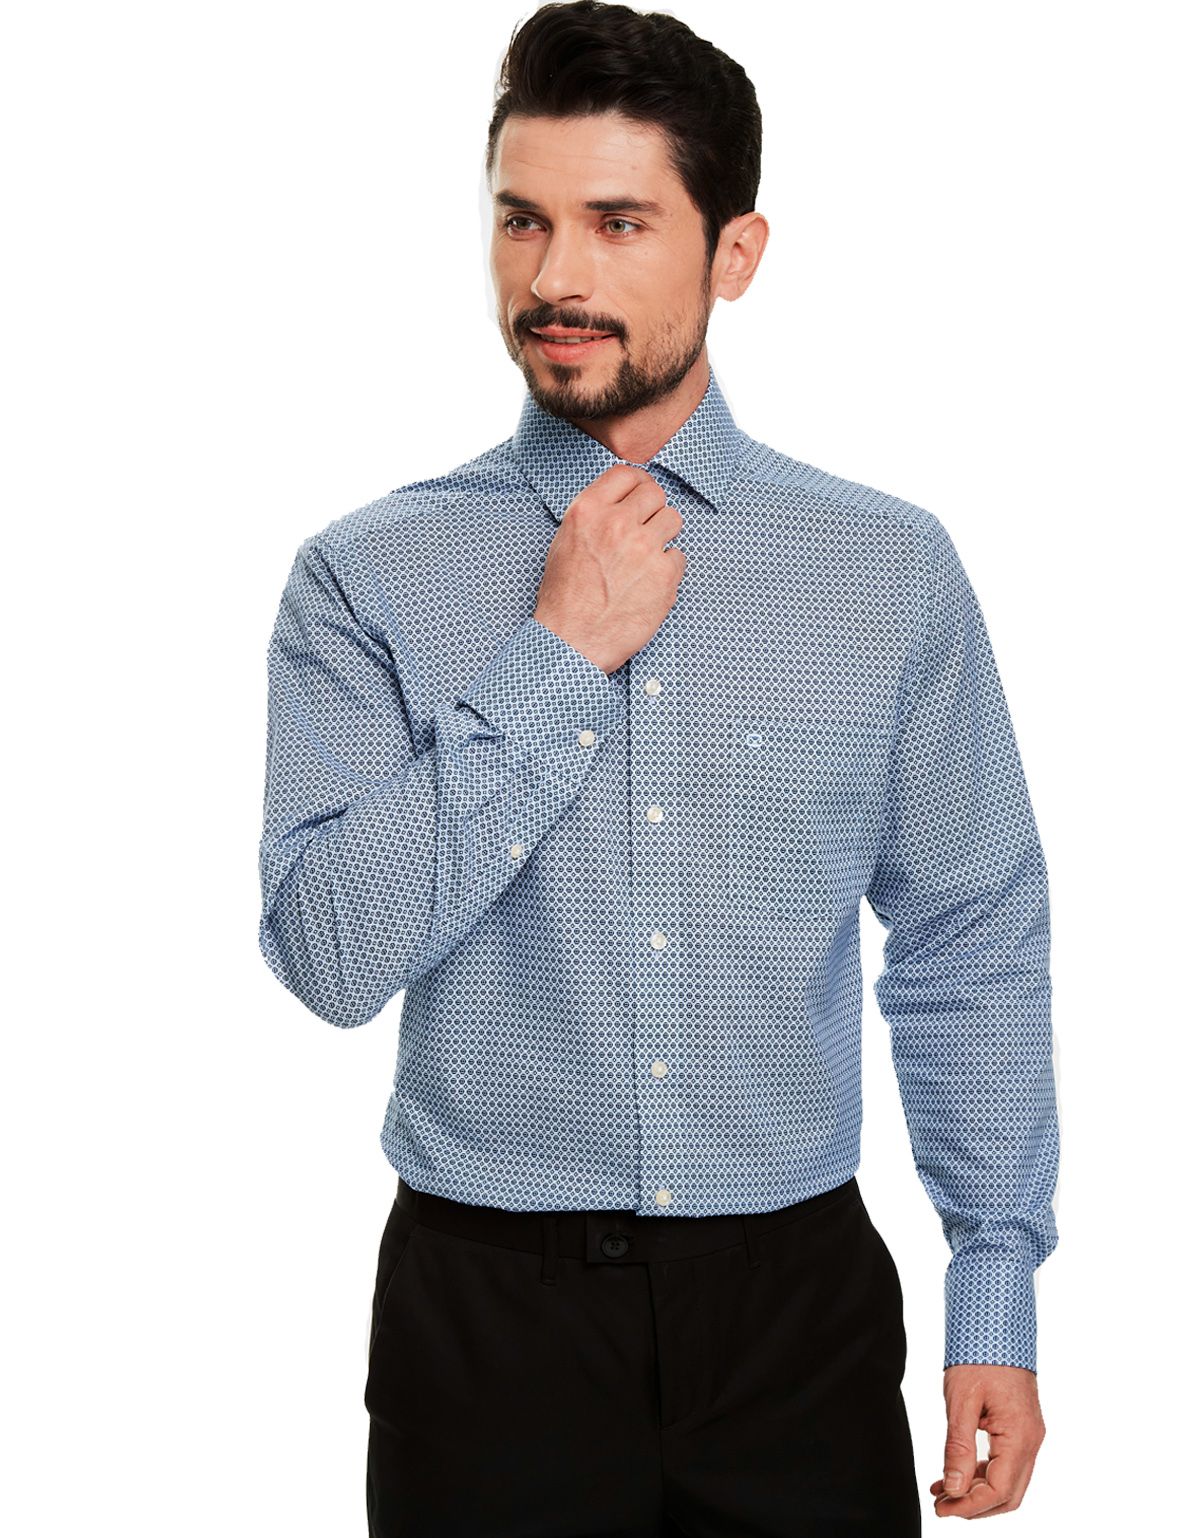 Рубашка мужская классическая с рисунком OLYMP Luxor, modern fit